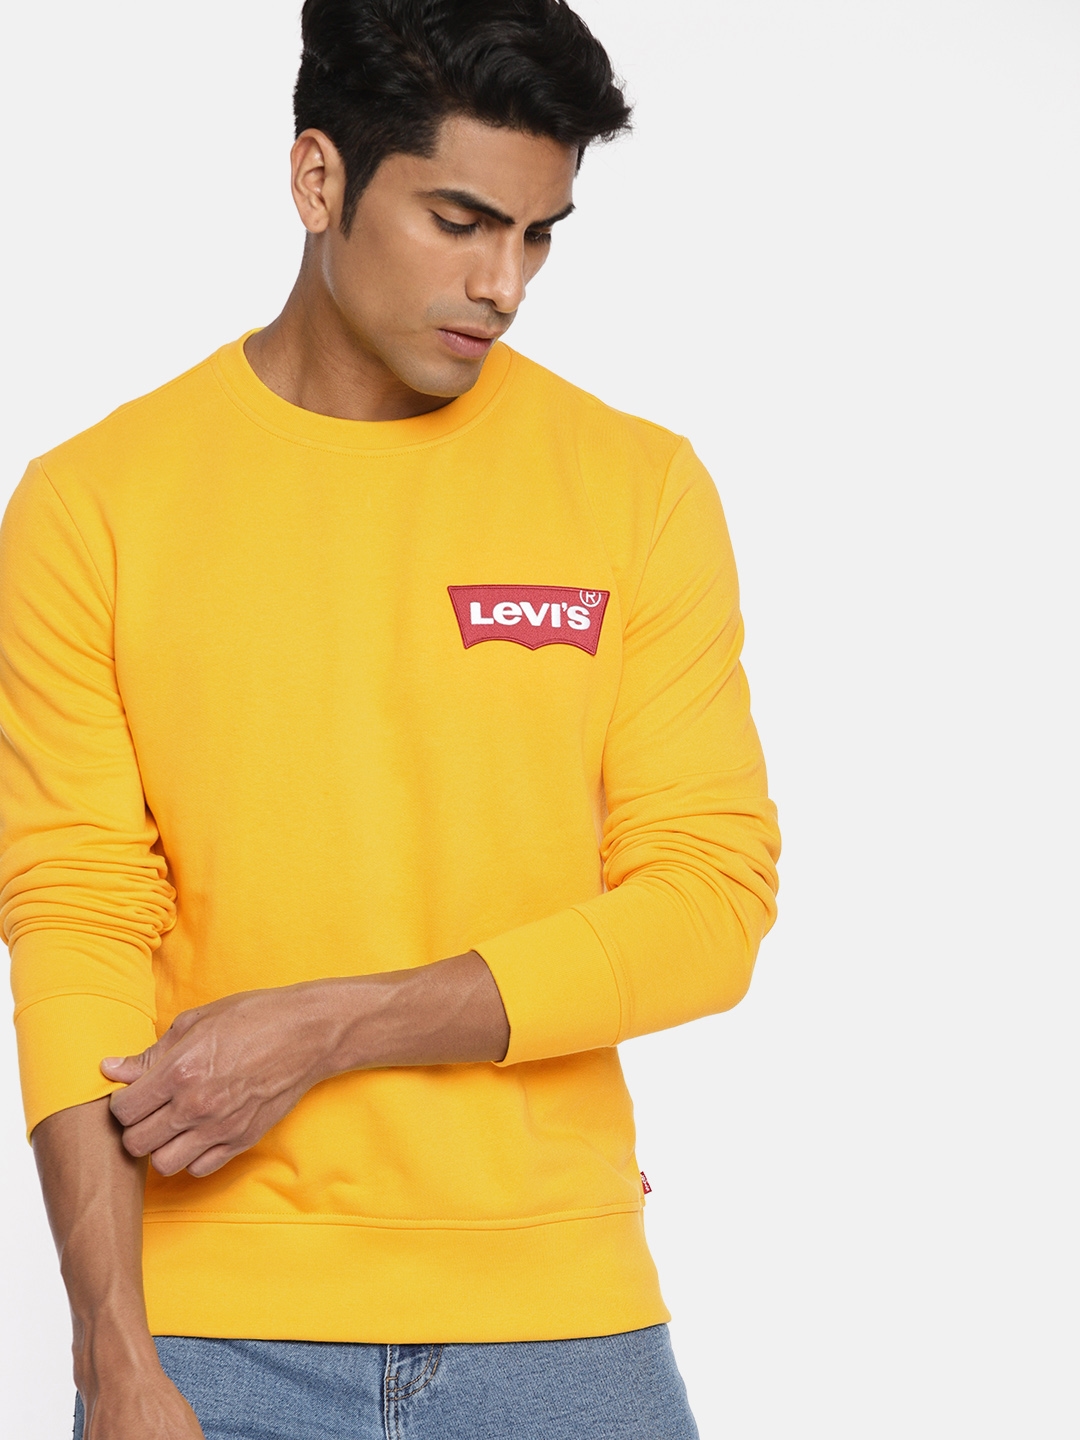 Introducir 54+ imagen levi’s sweatshirt yellow